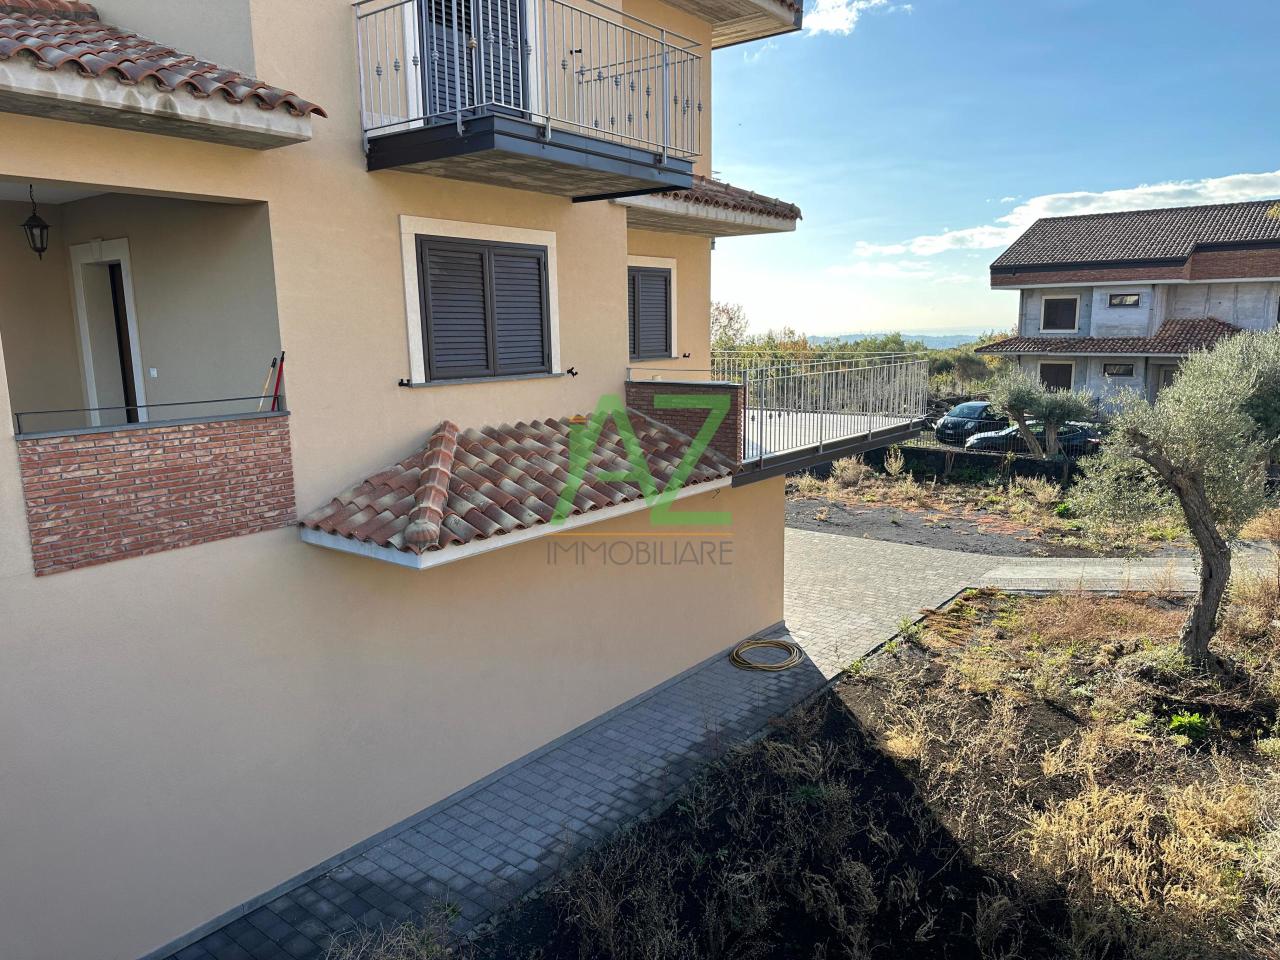 Villa in vendita a Aci Sant'Antonio, 8 locali, prezzo € 330.000 | PortaleAgenzieImmobiliari.it